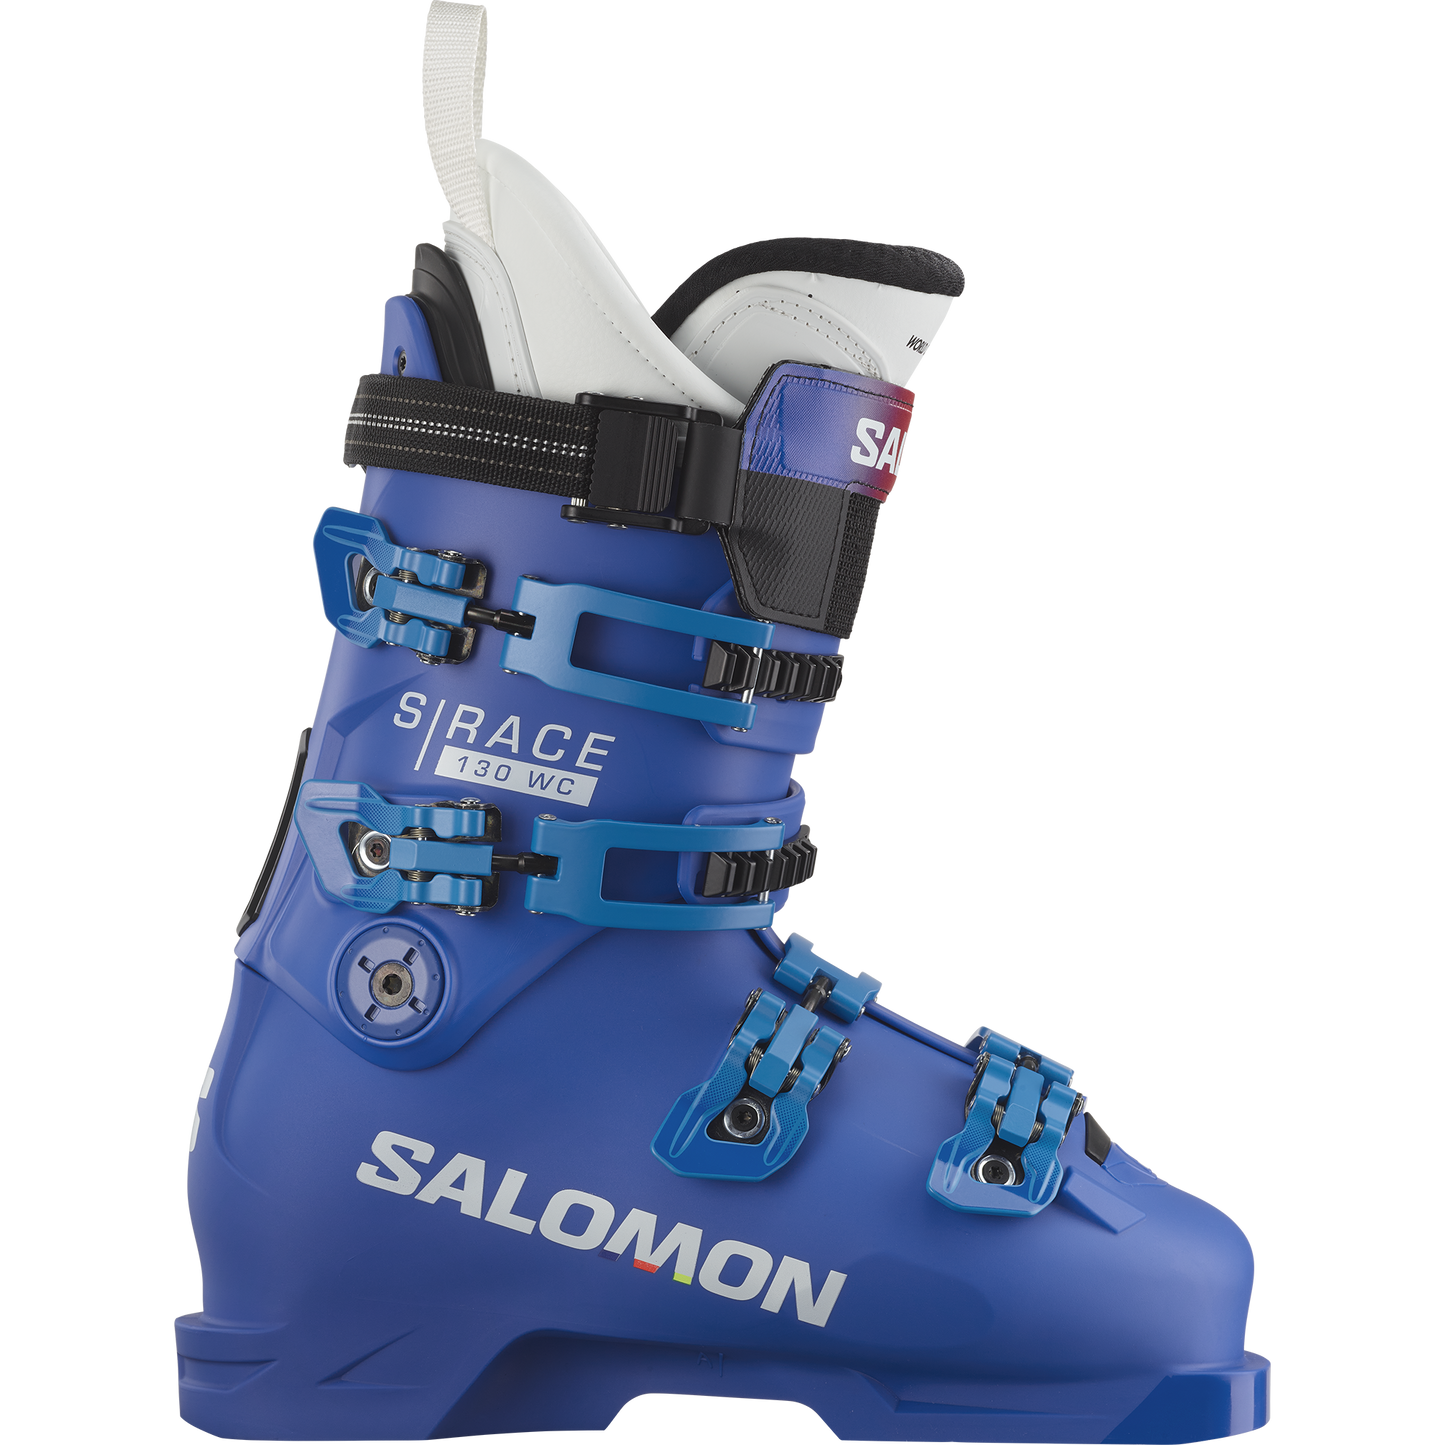 発送日は平日のみとなります【新品】SALOMON サロモン S/RACE 130 スキーブーツ 27.5